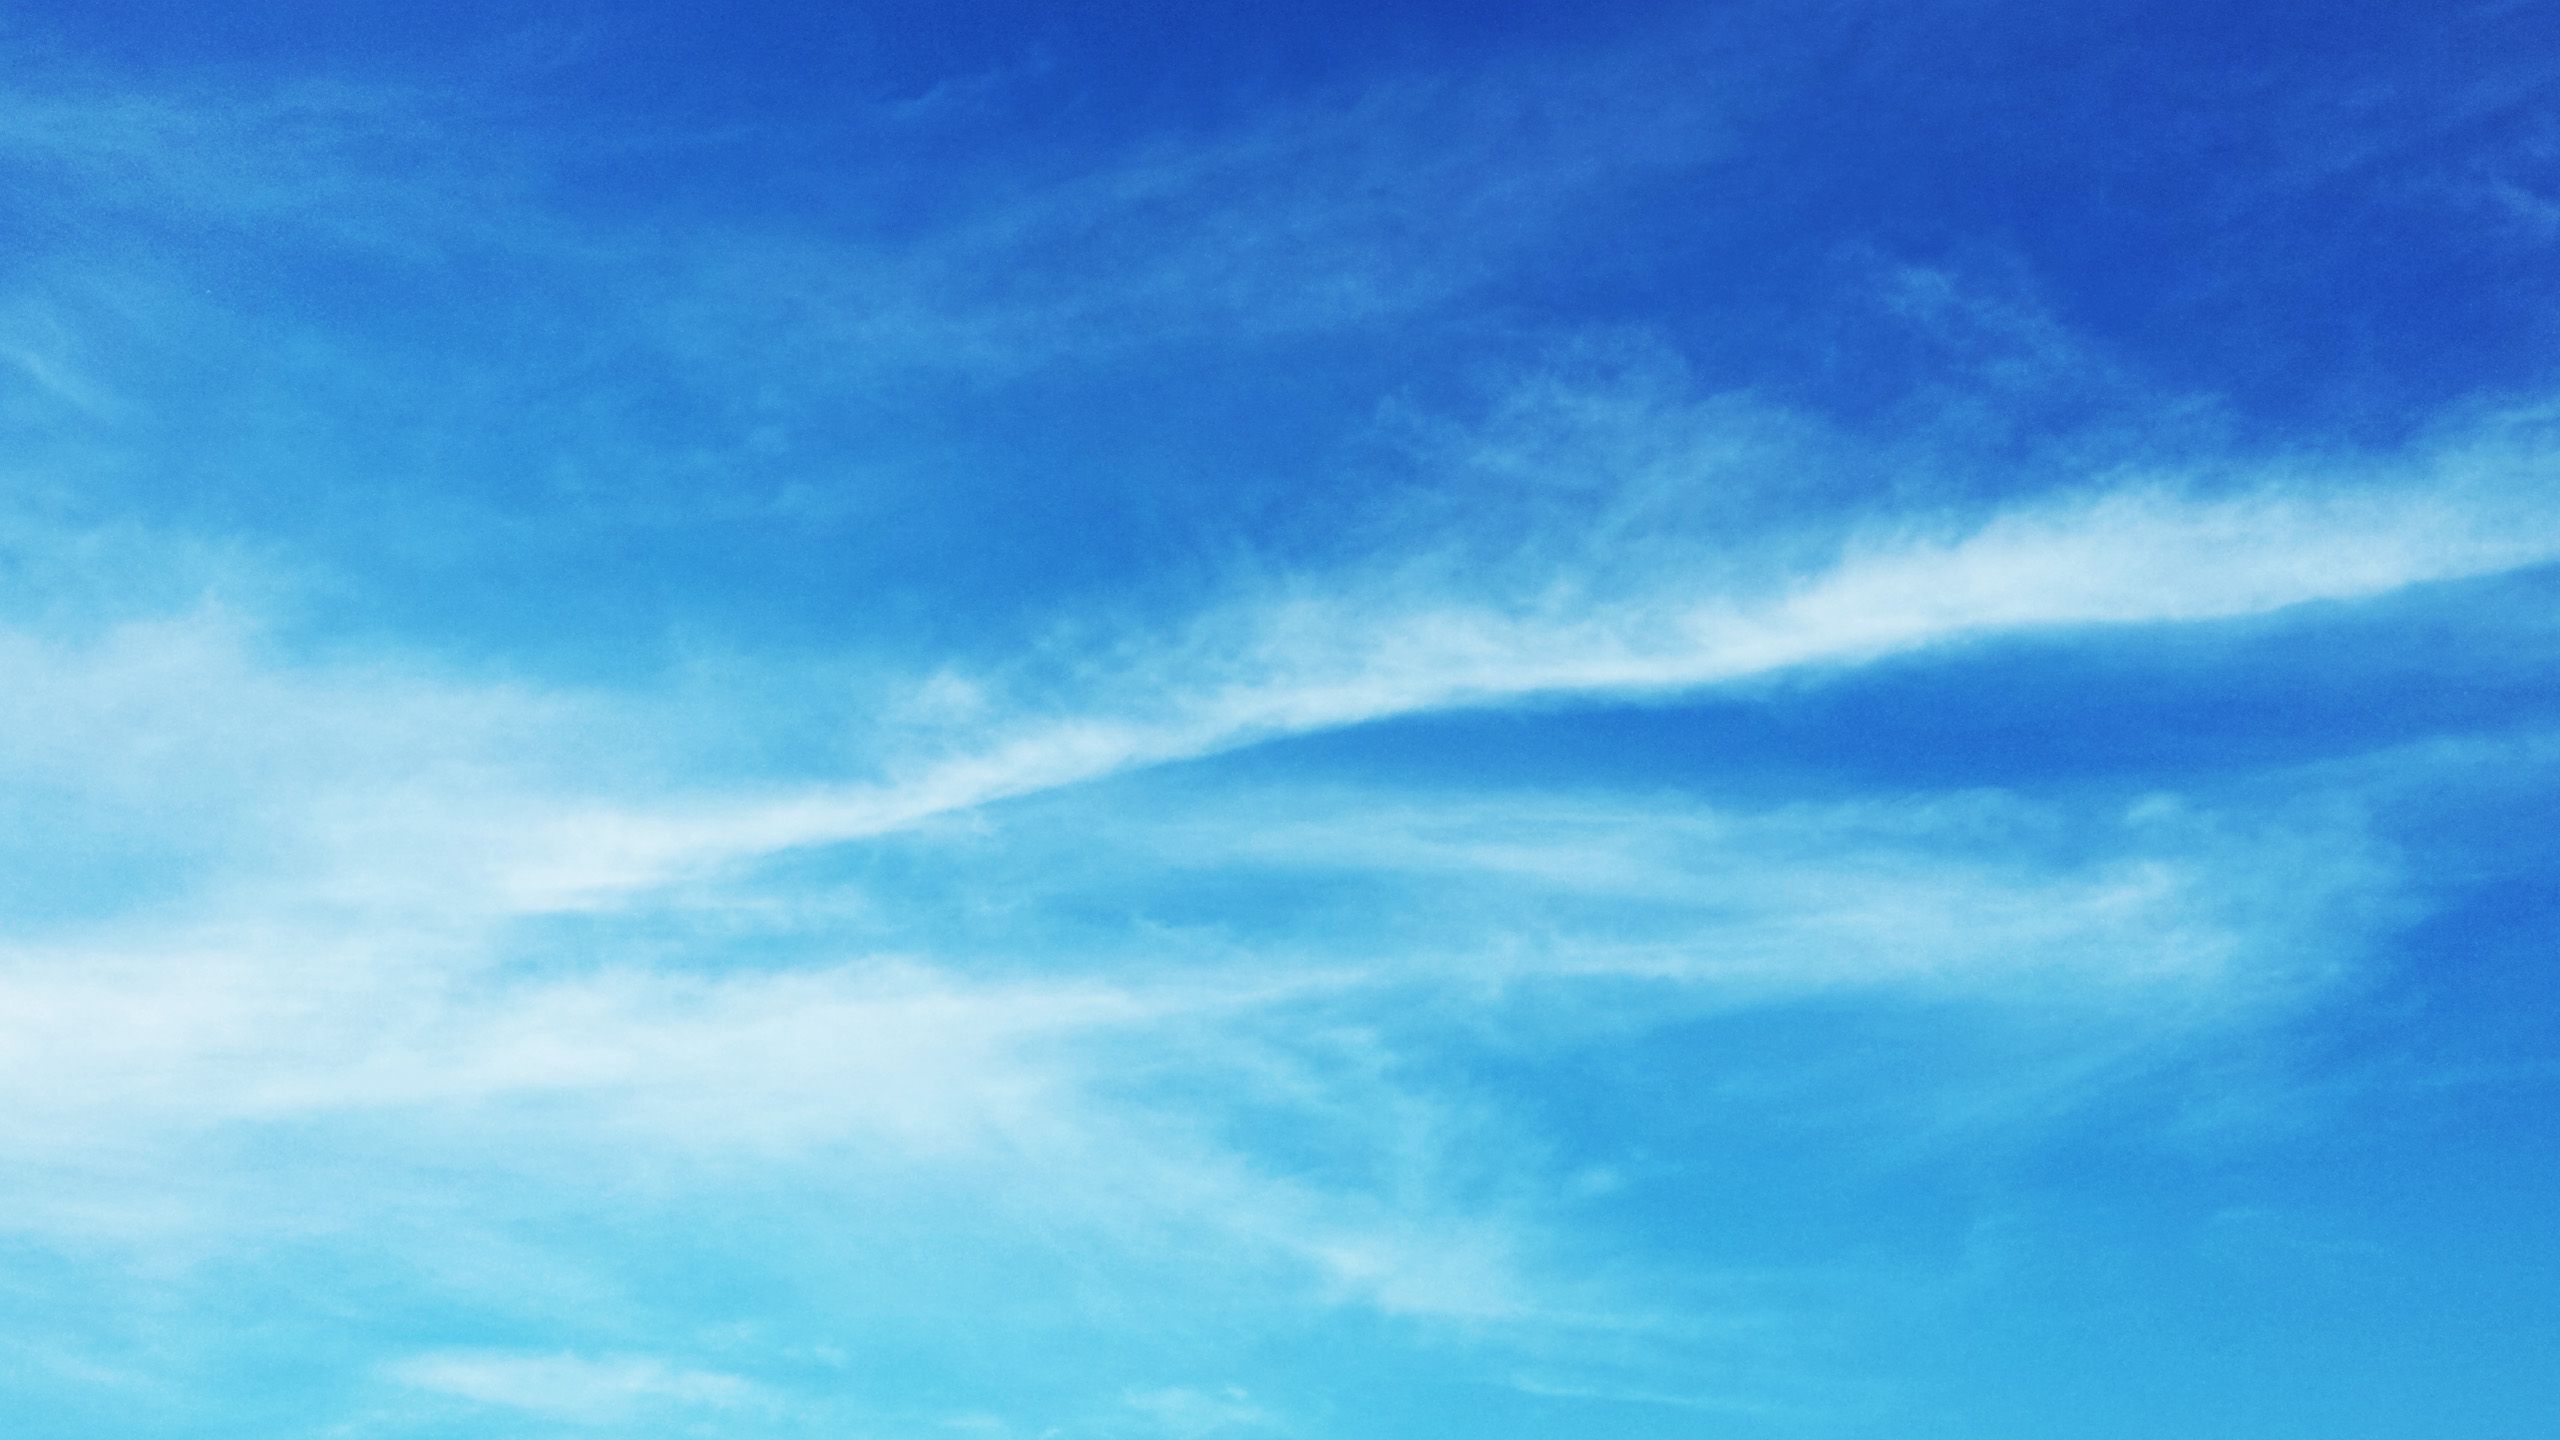 OC] Summer Sky [2560 X 1440] • R Wallpaper. Summer Sky, Wallpaper, Sky And Clouds